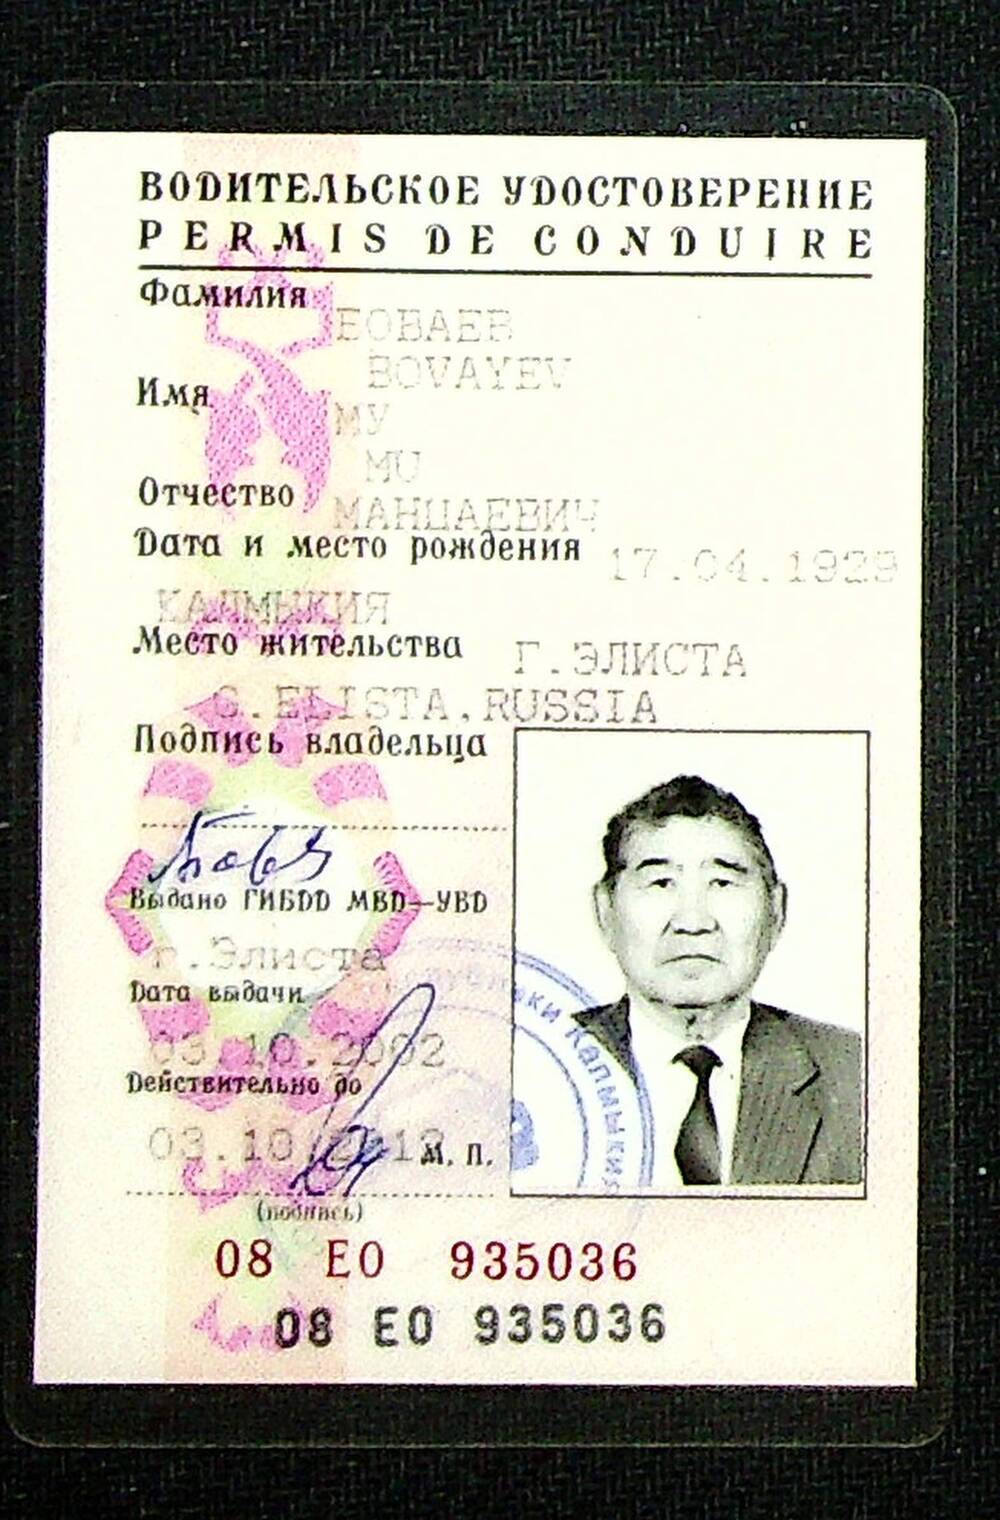 Удостоверение водительское 08 ЕО 935036 от 03.10.2002 г. На имя Боваева М.М.